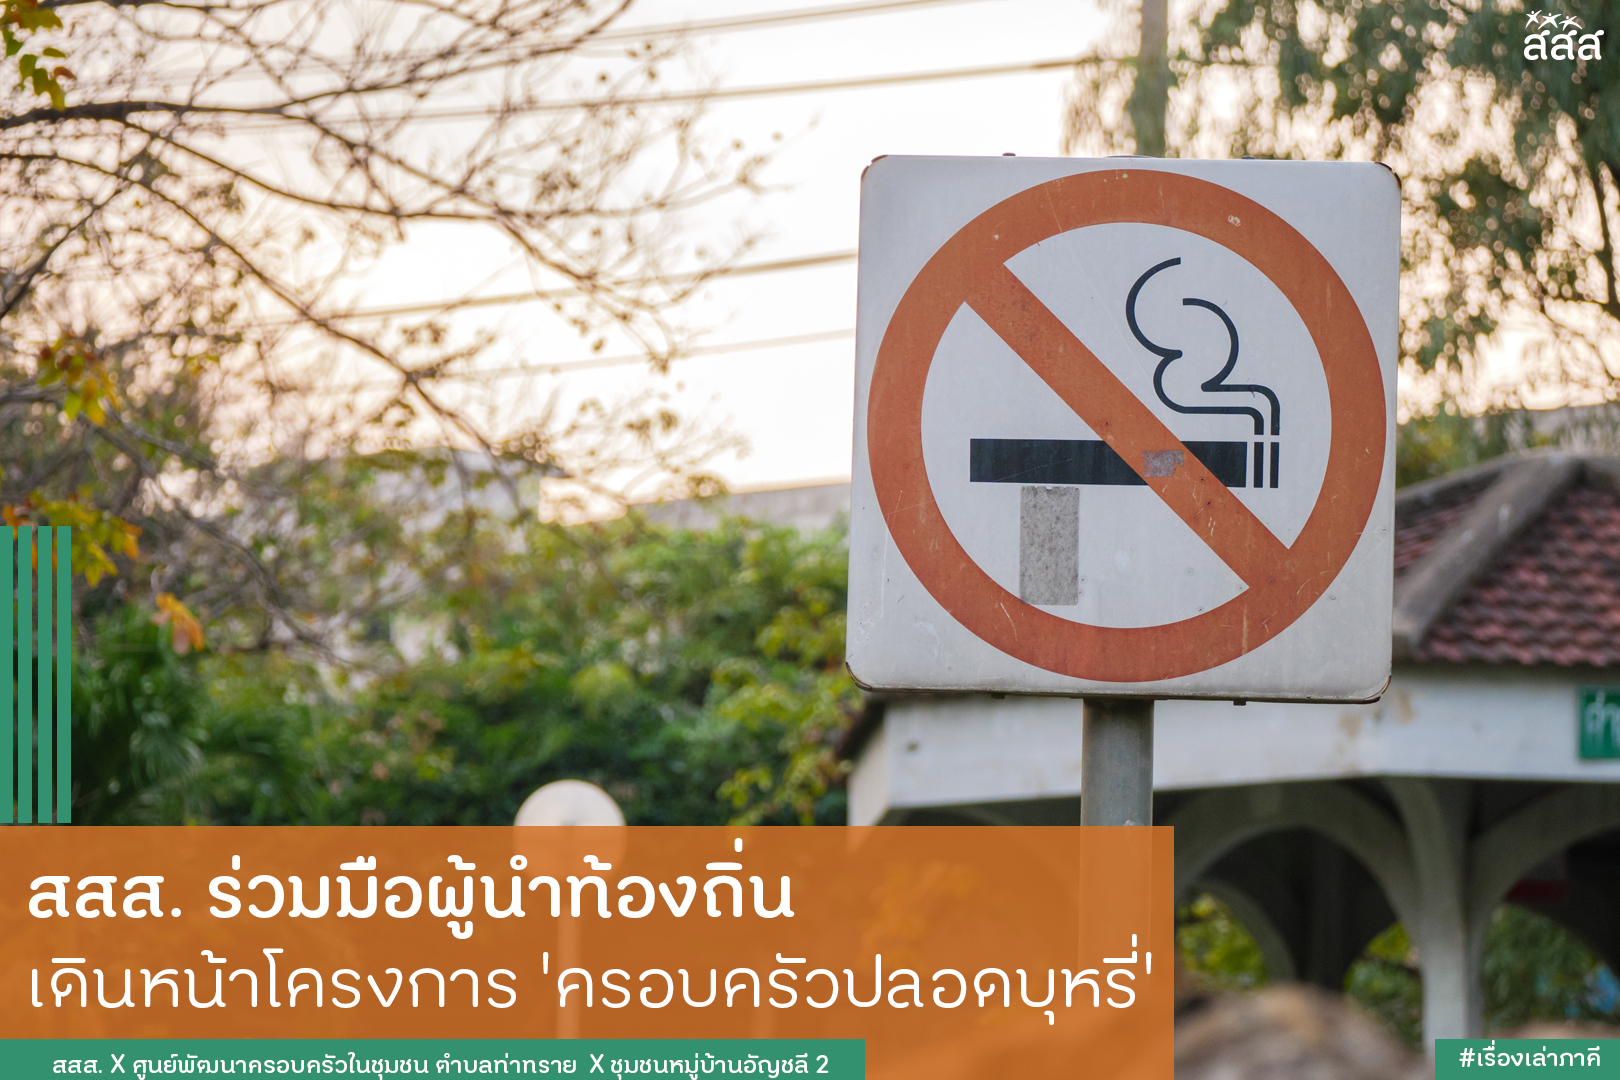 สสส.ร่วมมือผู้นำท้องถิ่น เดินหน้าโครงการ ครอบครัวปลอดบุหรี่ thaihealth